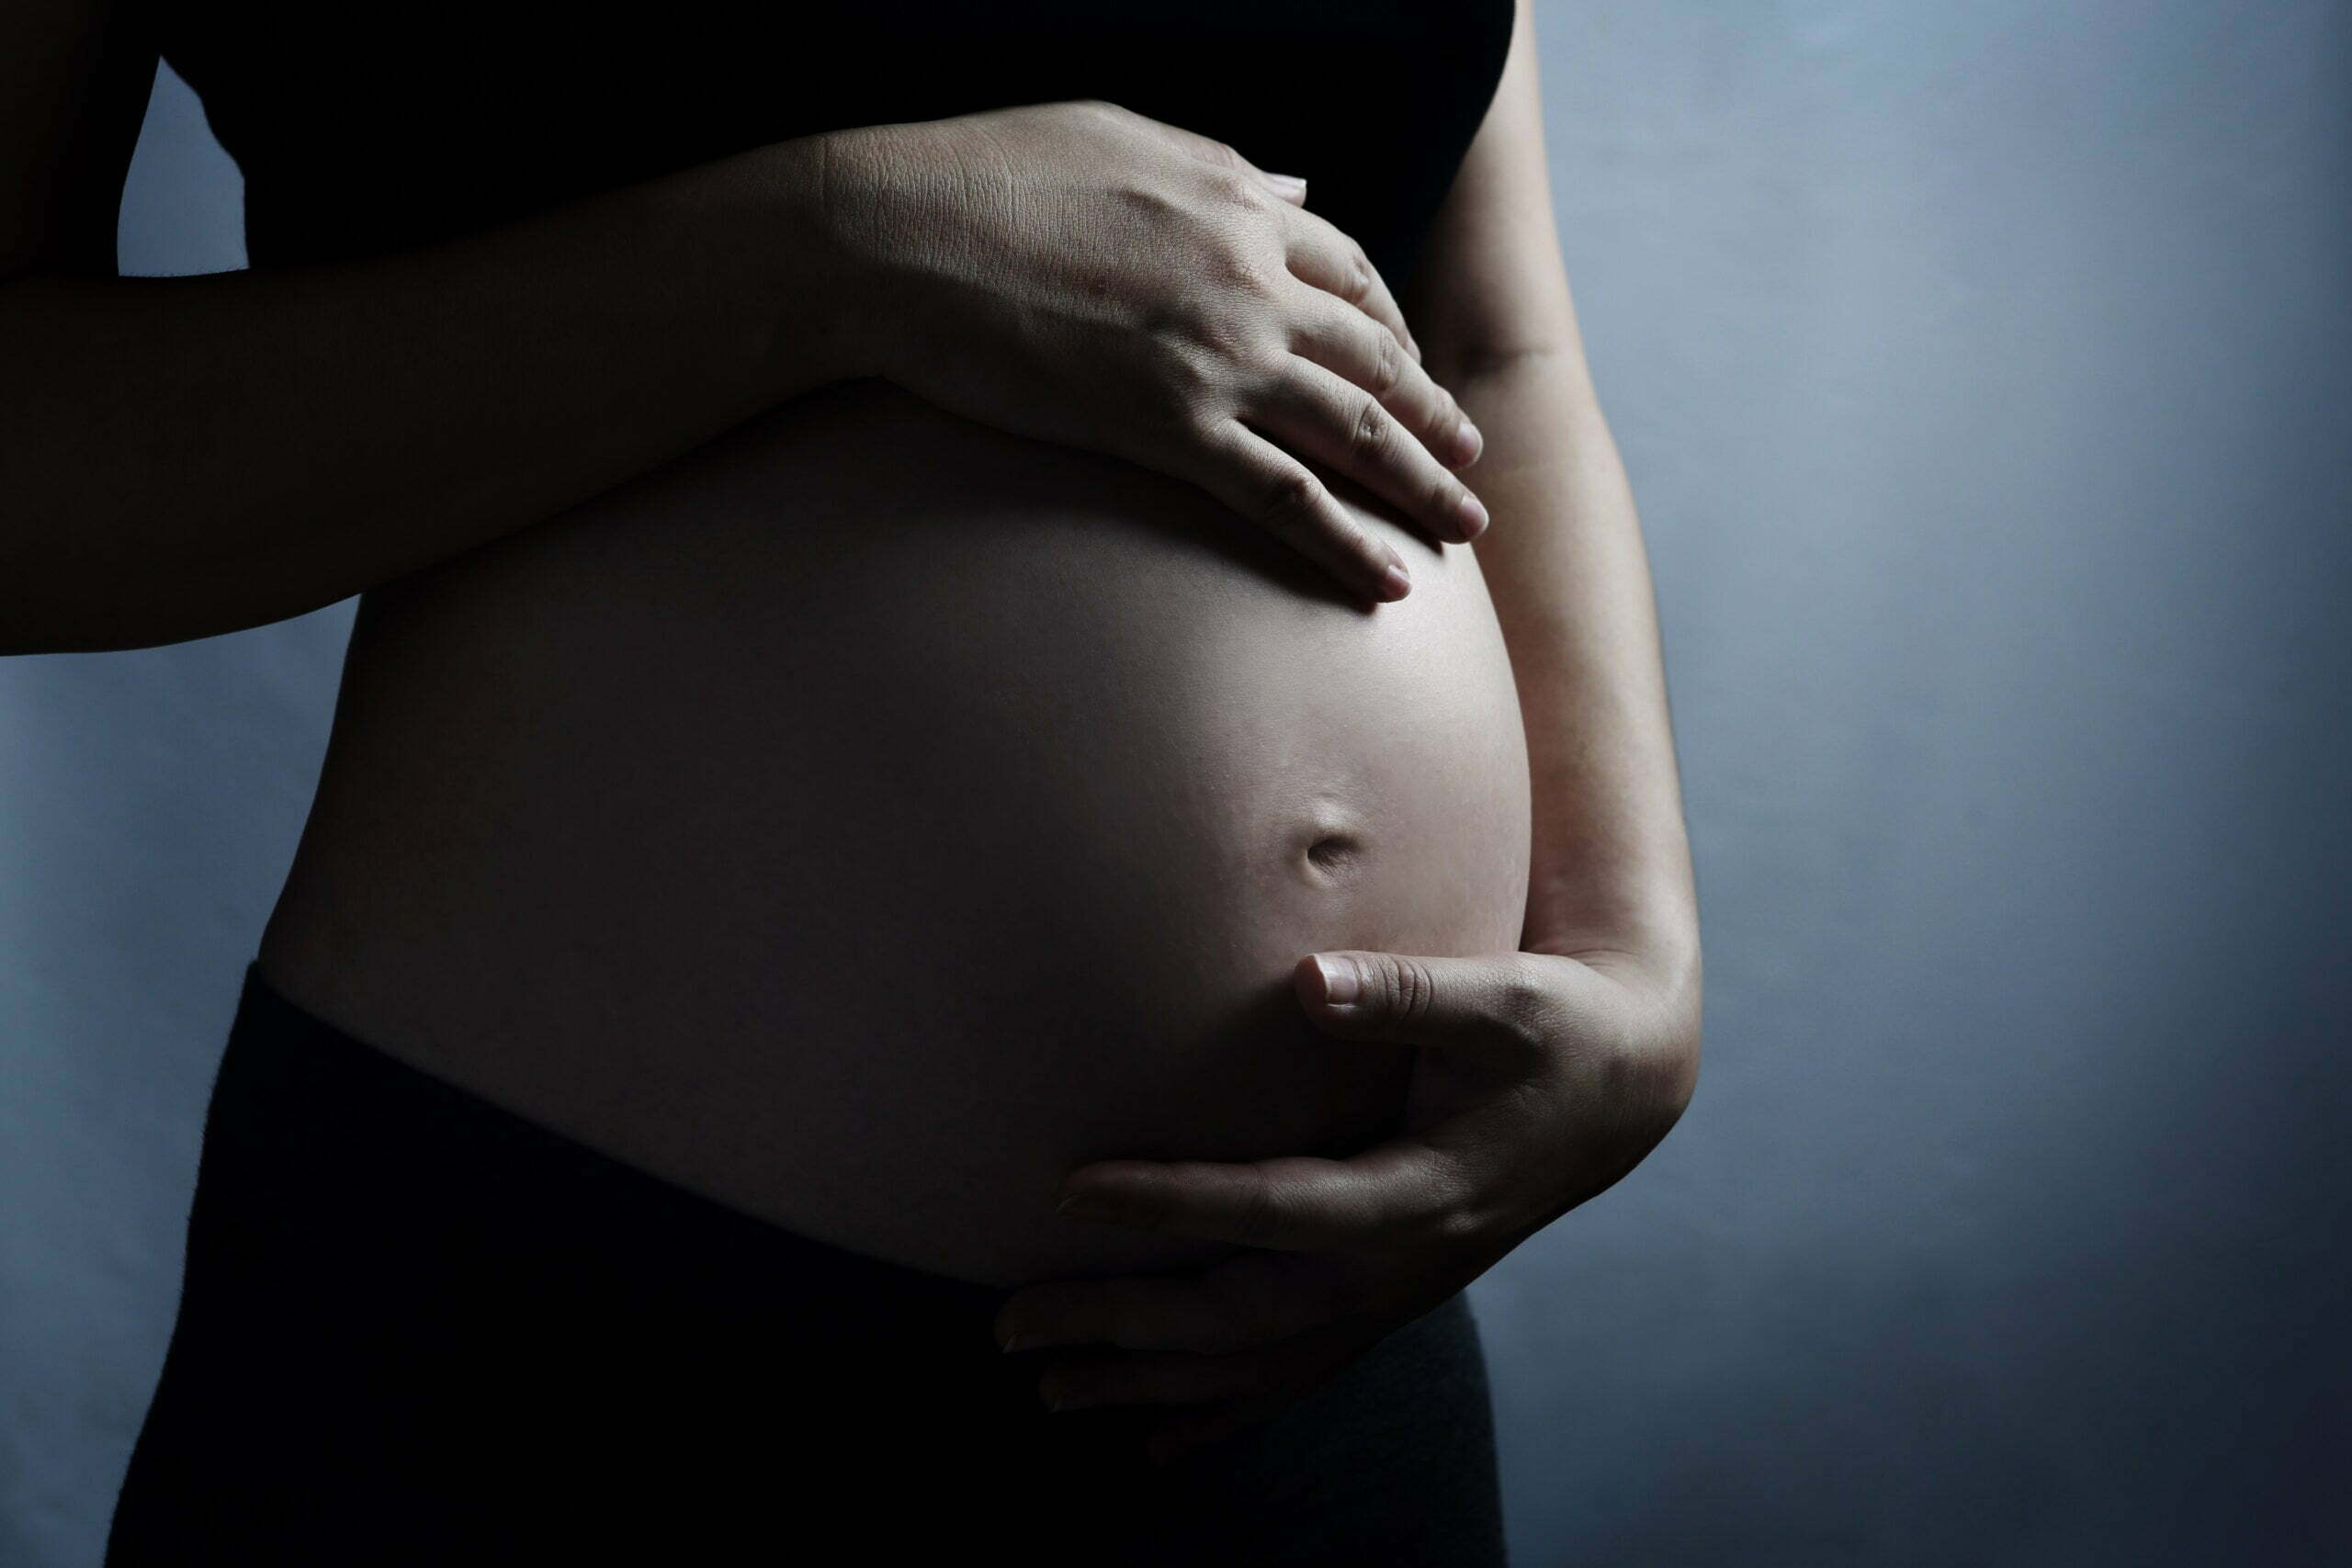 Foto da barriga de uma mulher grávida, em referência à discussão sobre a garantia de direitos de gestantes e mães no sistema prisional e socioeducativo